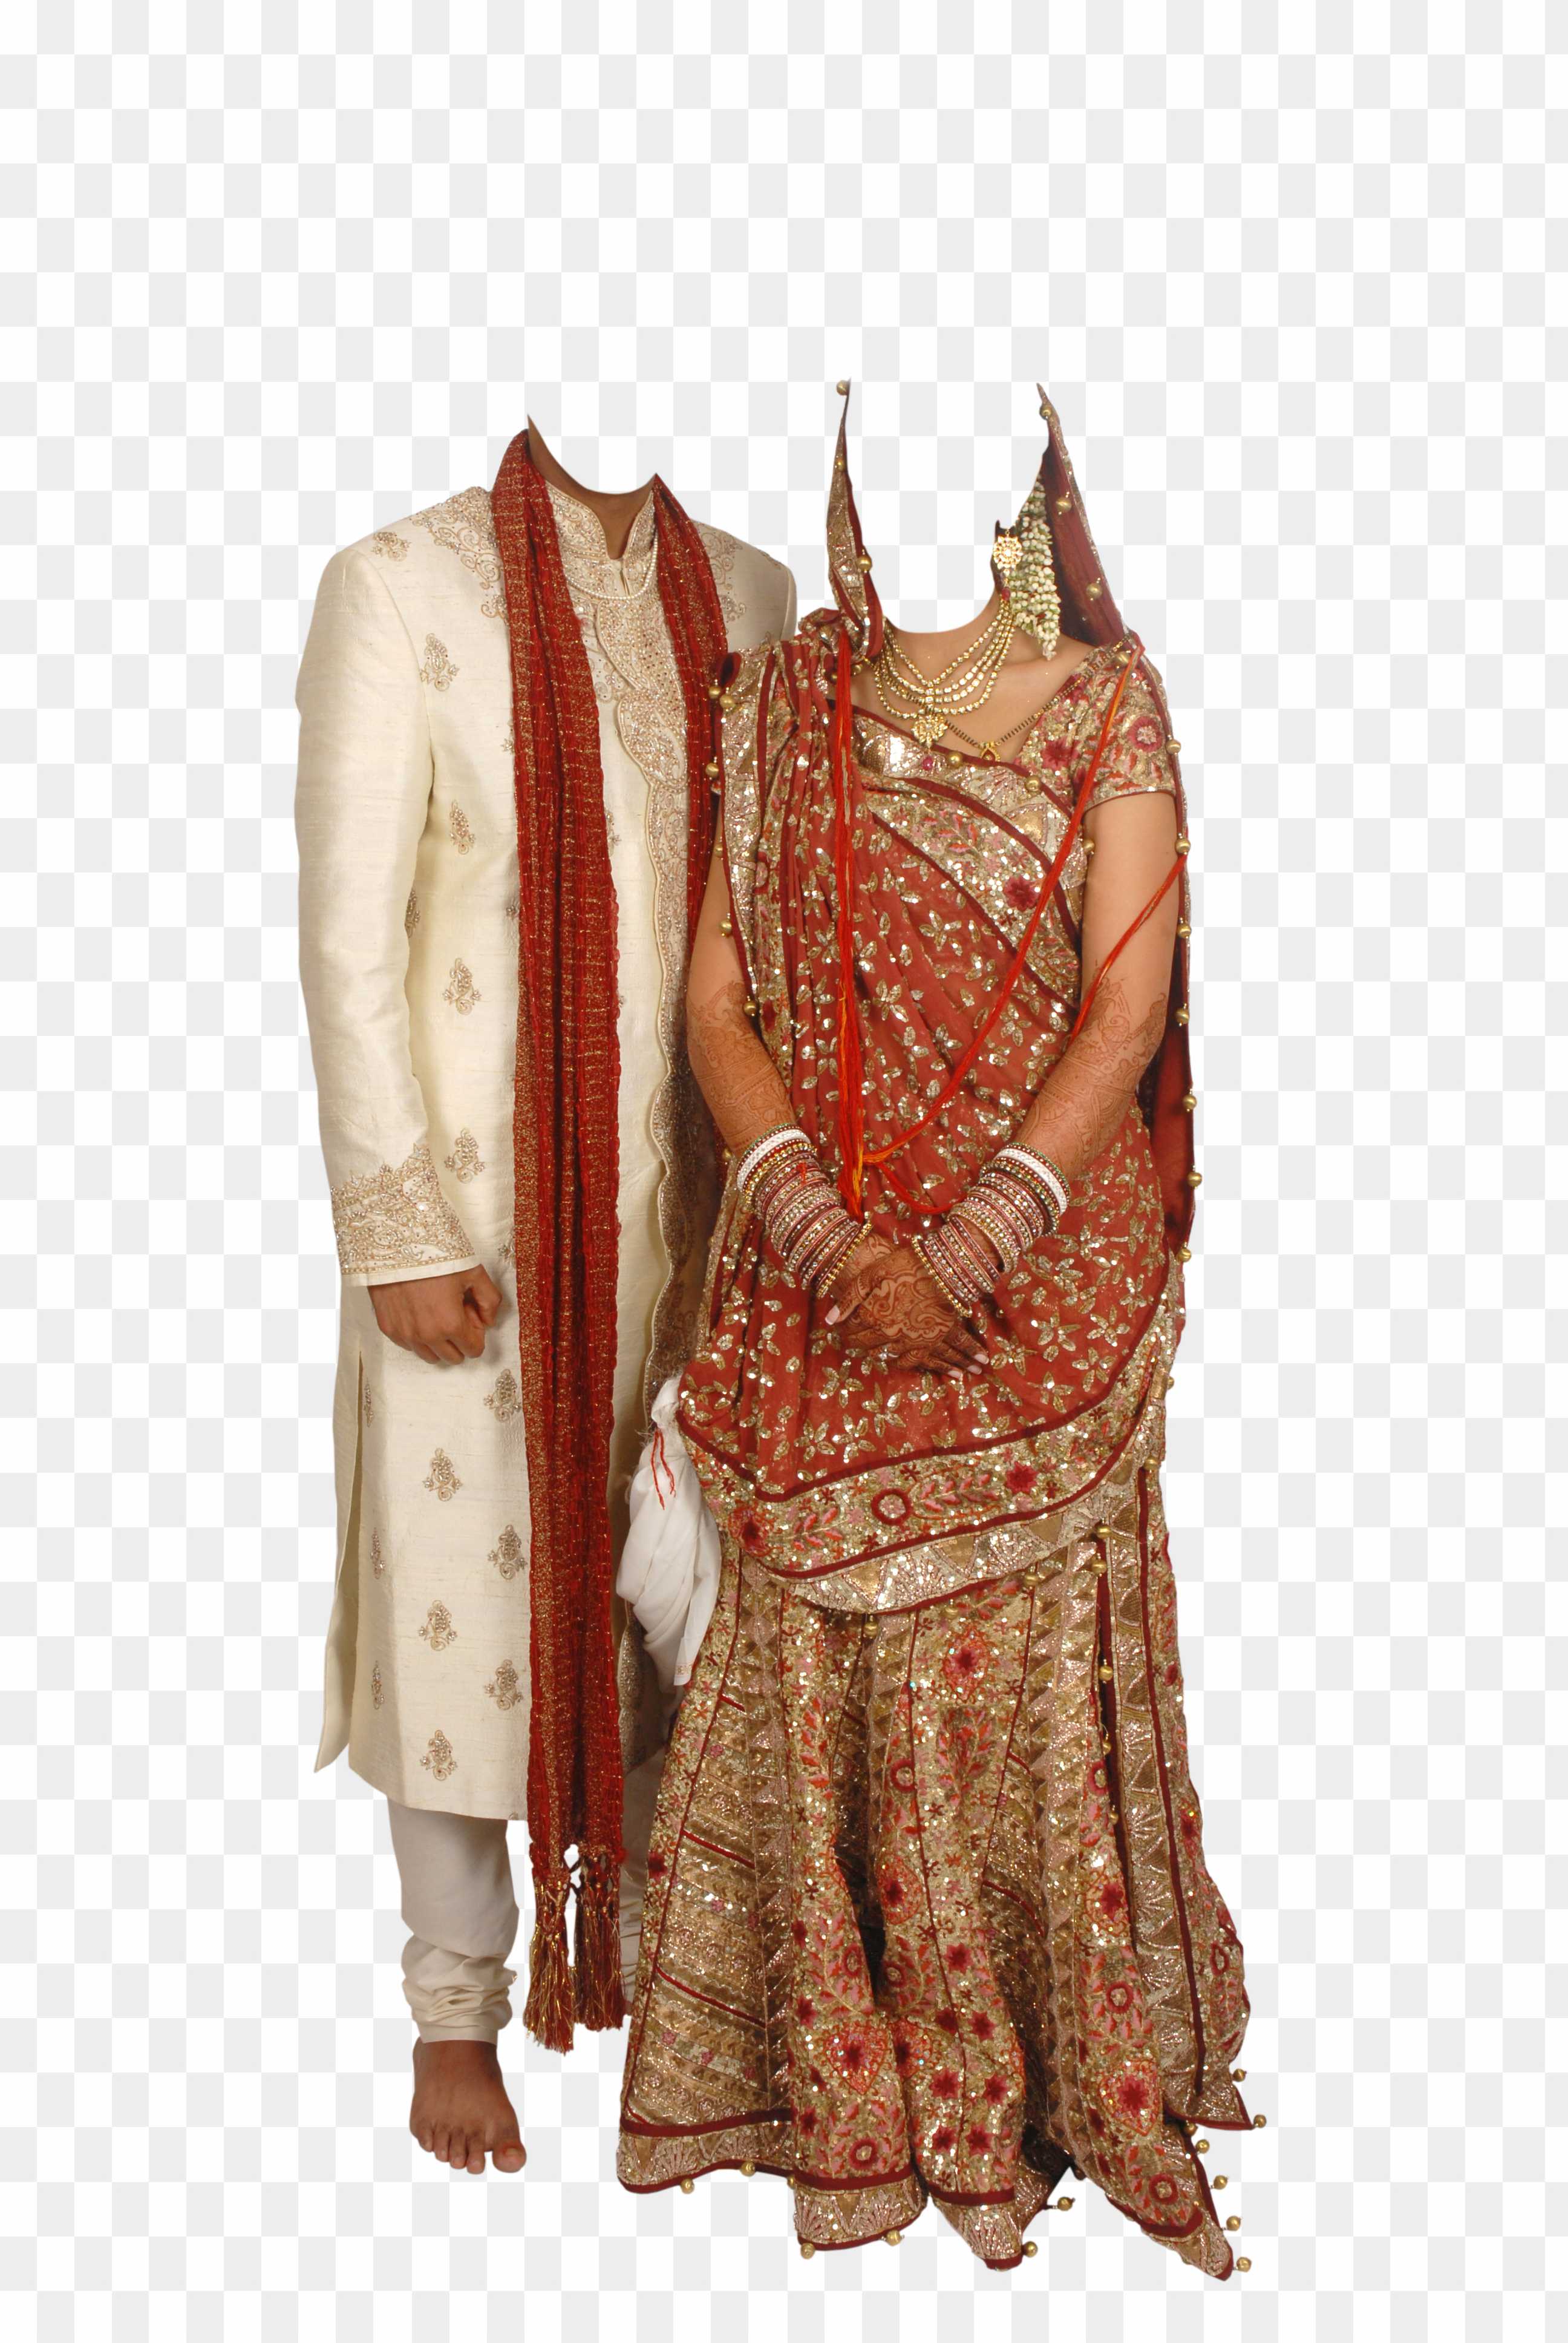 Maharashtrian couple wedding dress idea's - YouTube